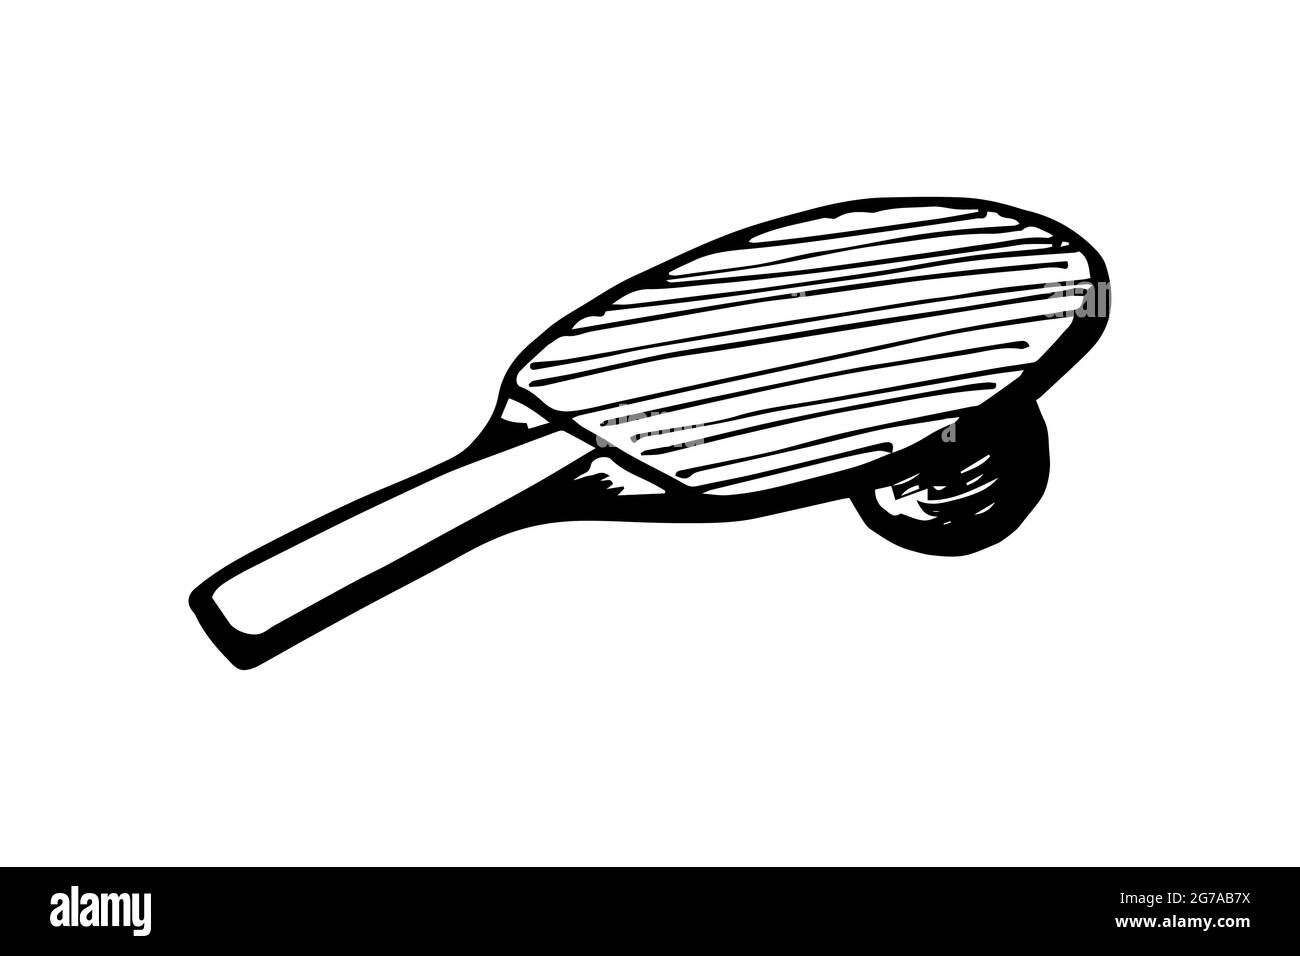 Dessin à la main de la raquette de ping-pong et de la balle.Équipement de tennis  de table.Concept d'icône de jeu de ping-pong.Vector eps encre noire Doodle  illustration isolée sur fond blanc Image